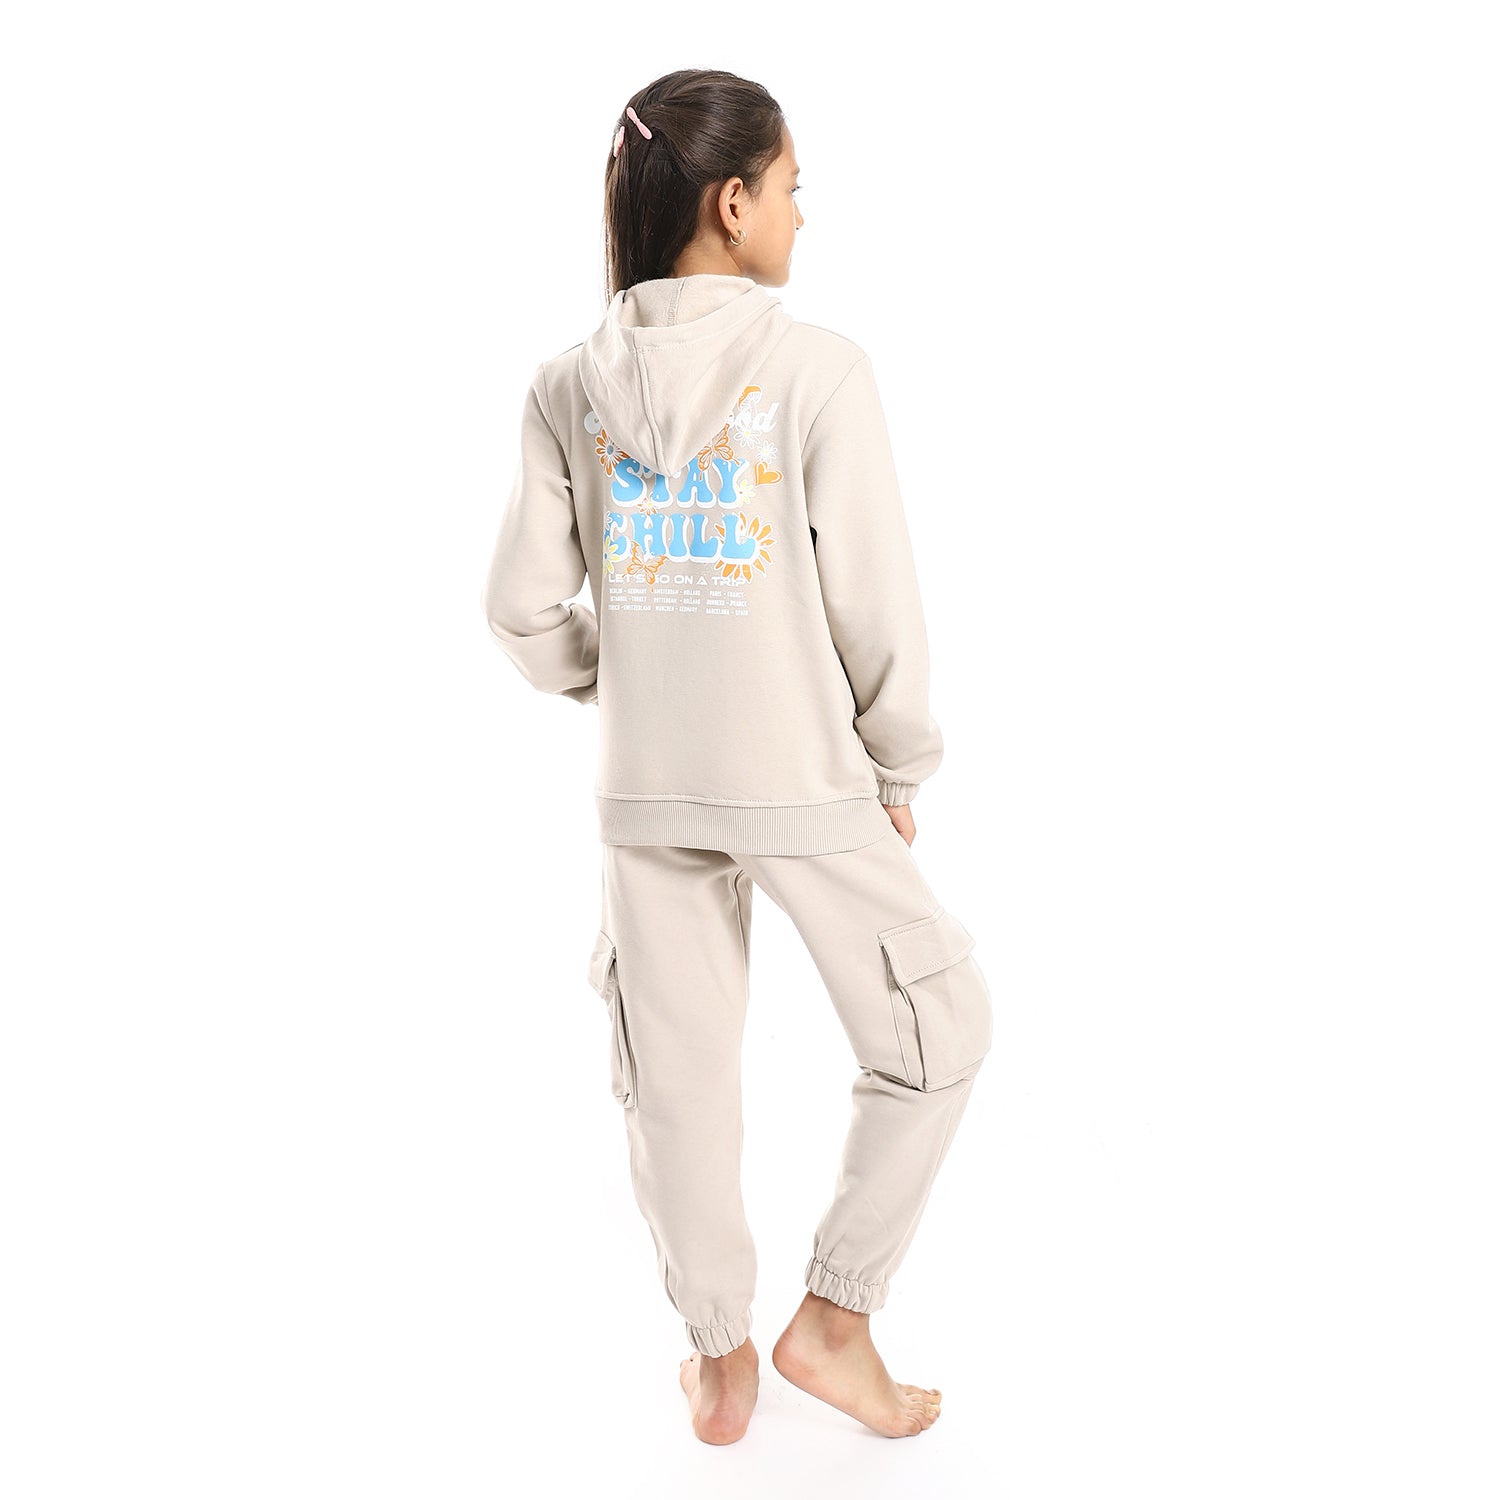 Copy of Girls winter hoodie pajamas - Beige